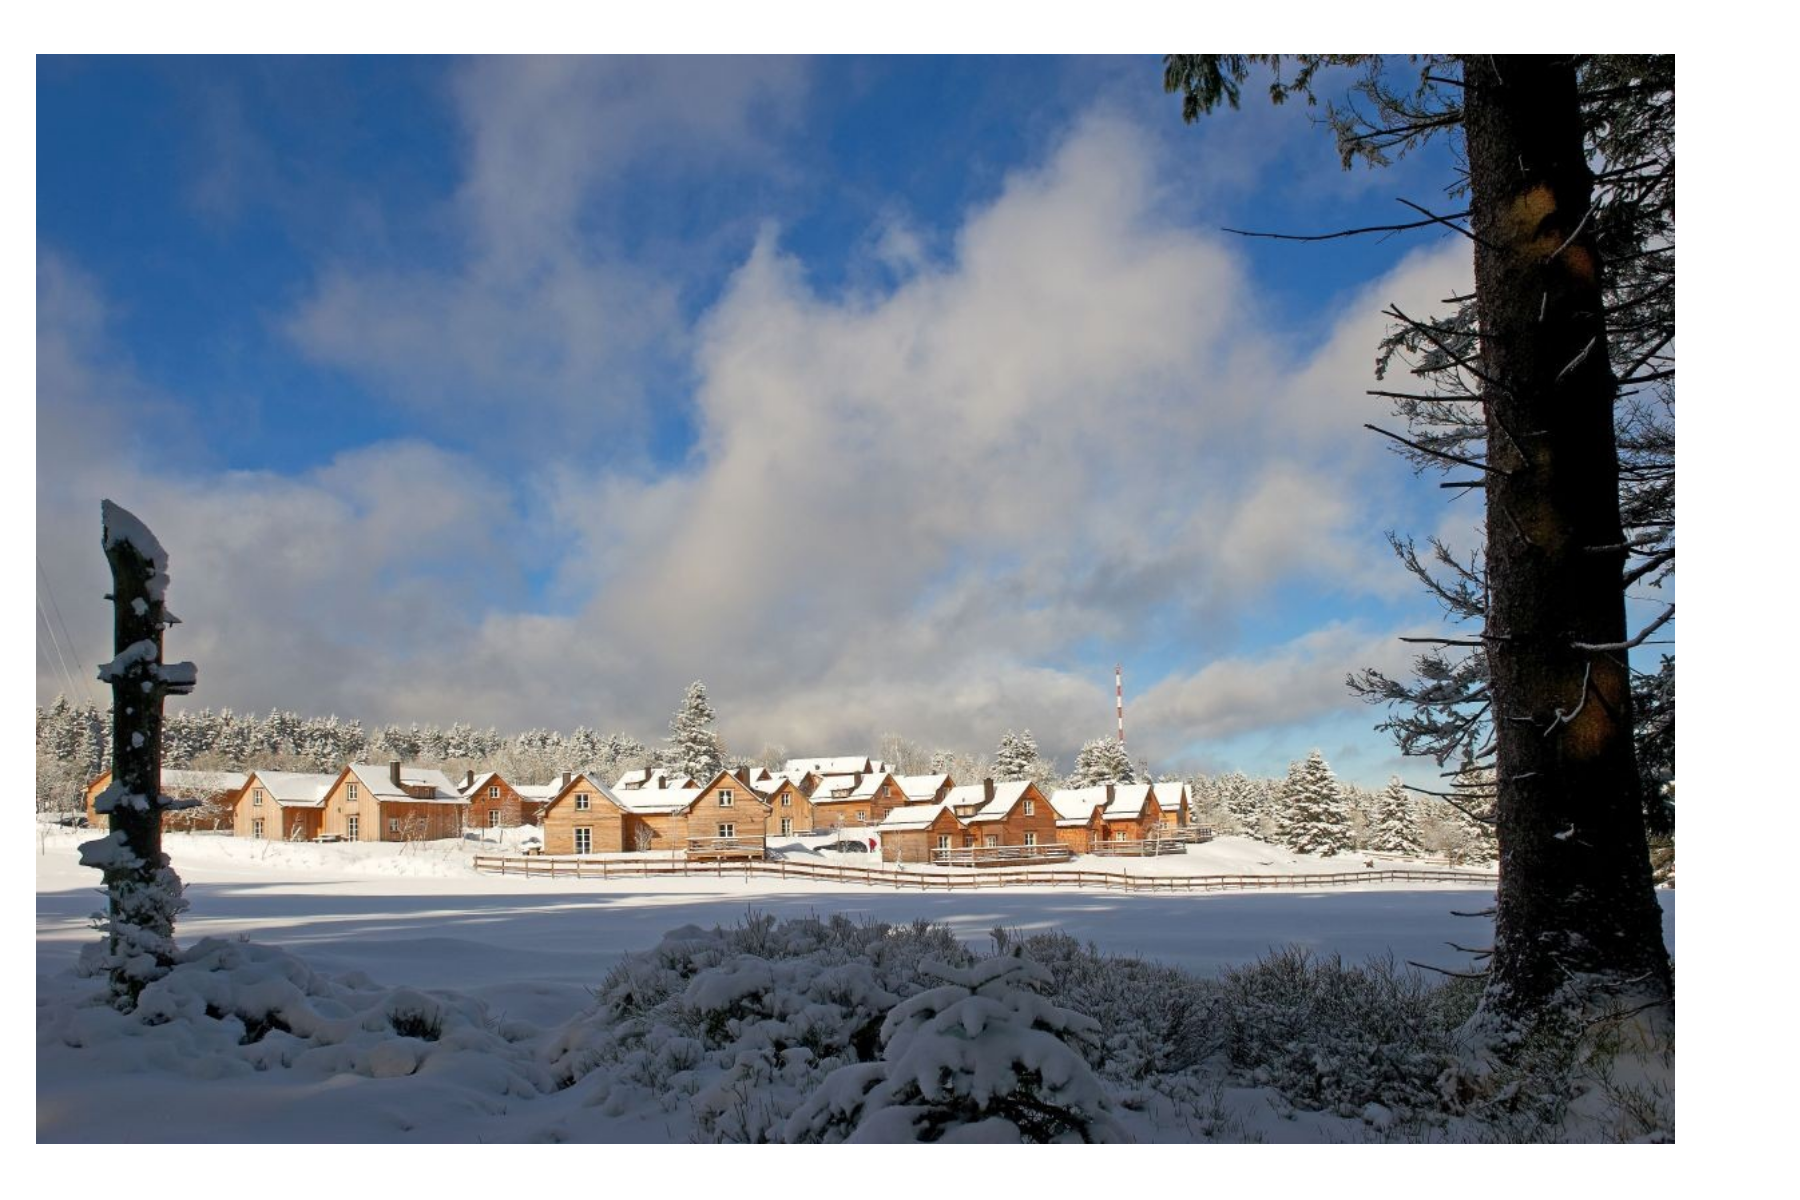 Winterbild des Resorts auf dem Torfhausmoor